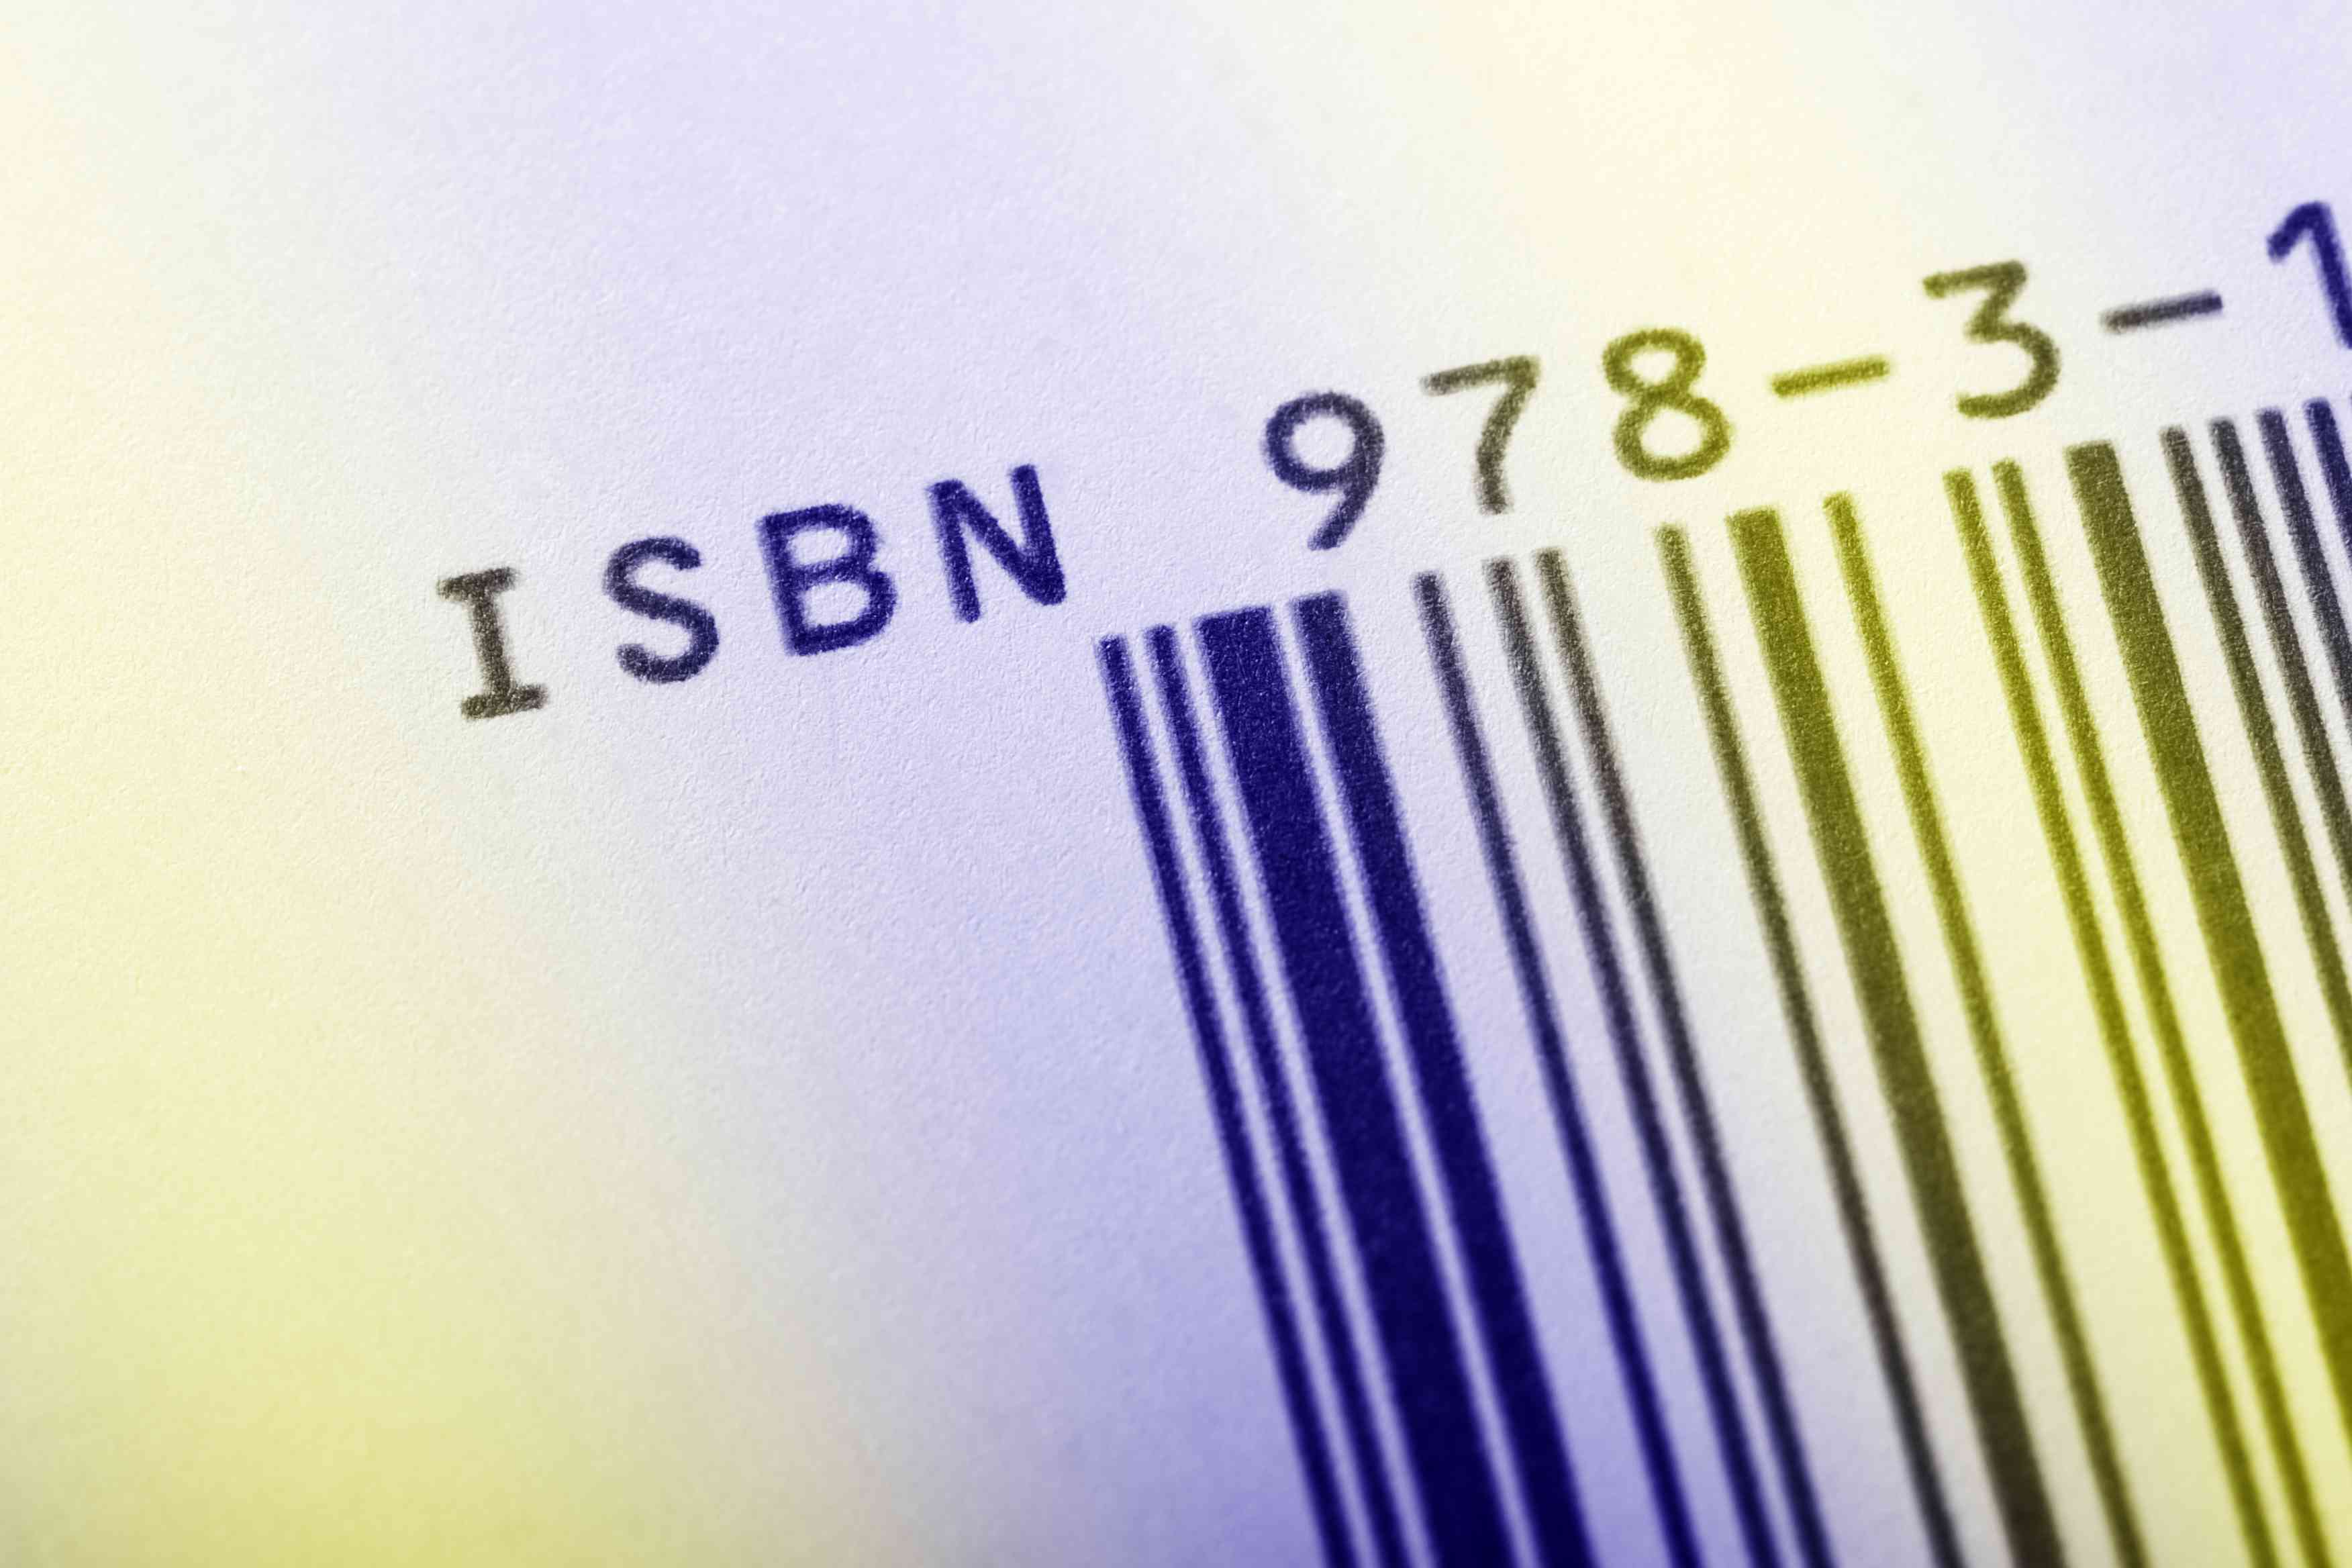 ISBN-kod på en bok